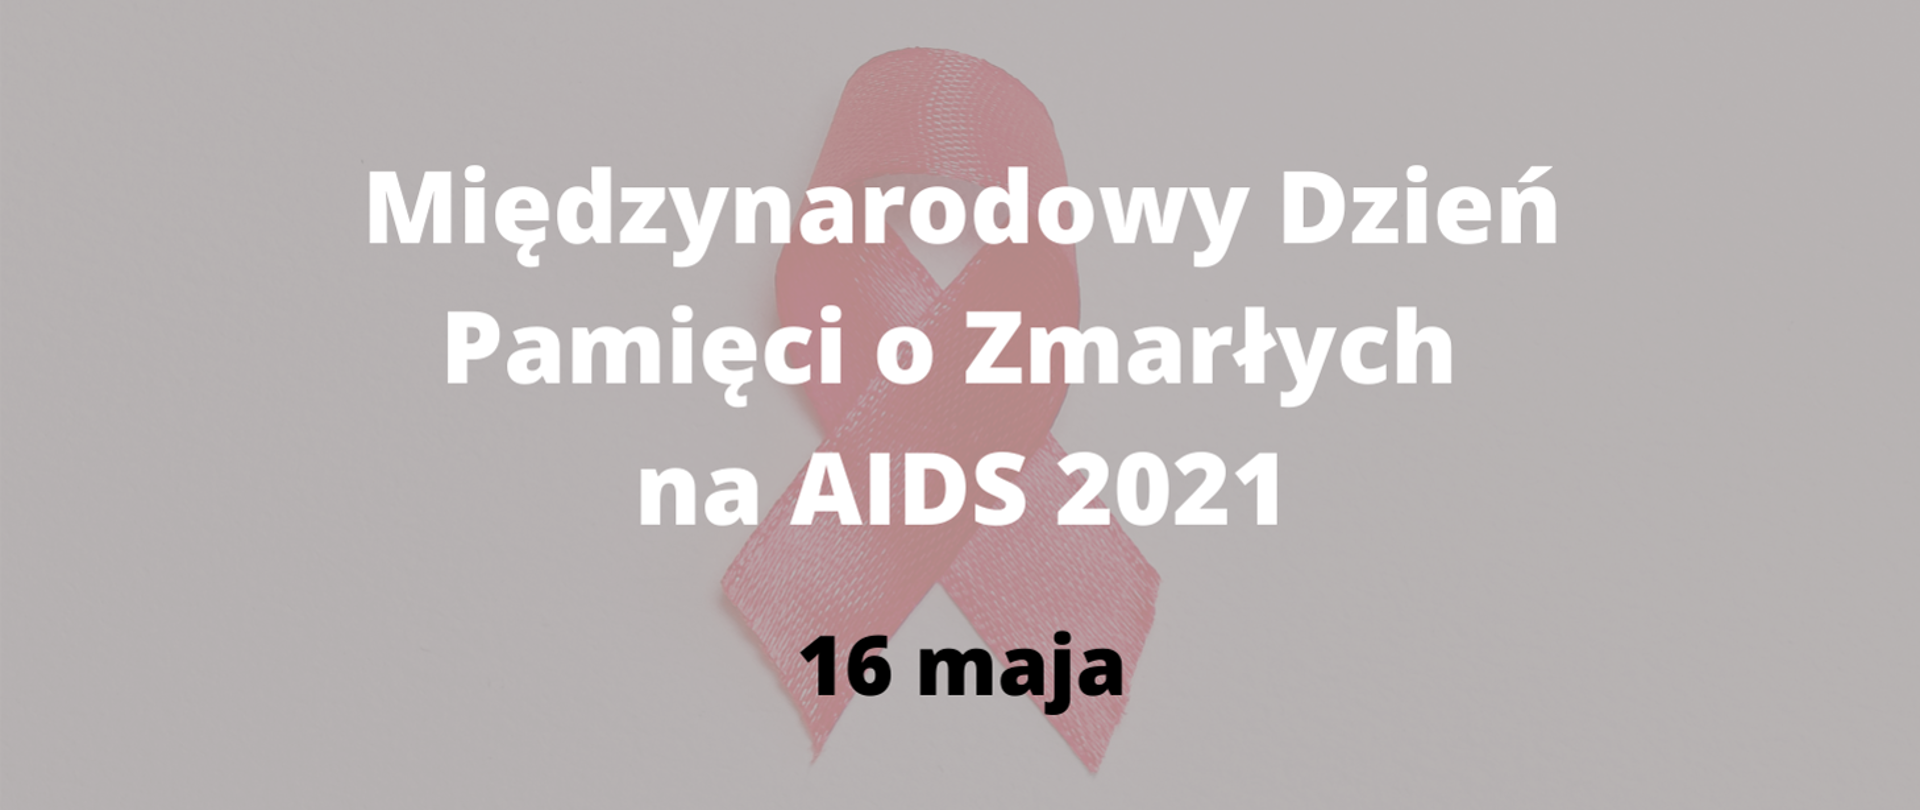 Międzynarodowy Dzień Pamięci o Zmarłych na AIDS 2021 w tle czerwona kokardka